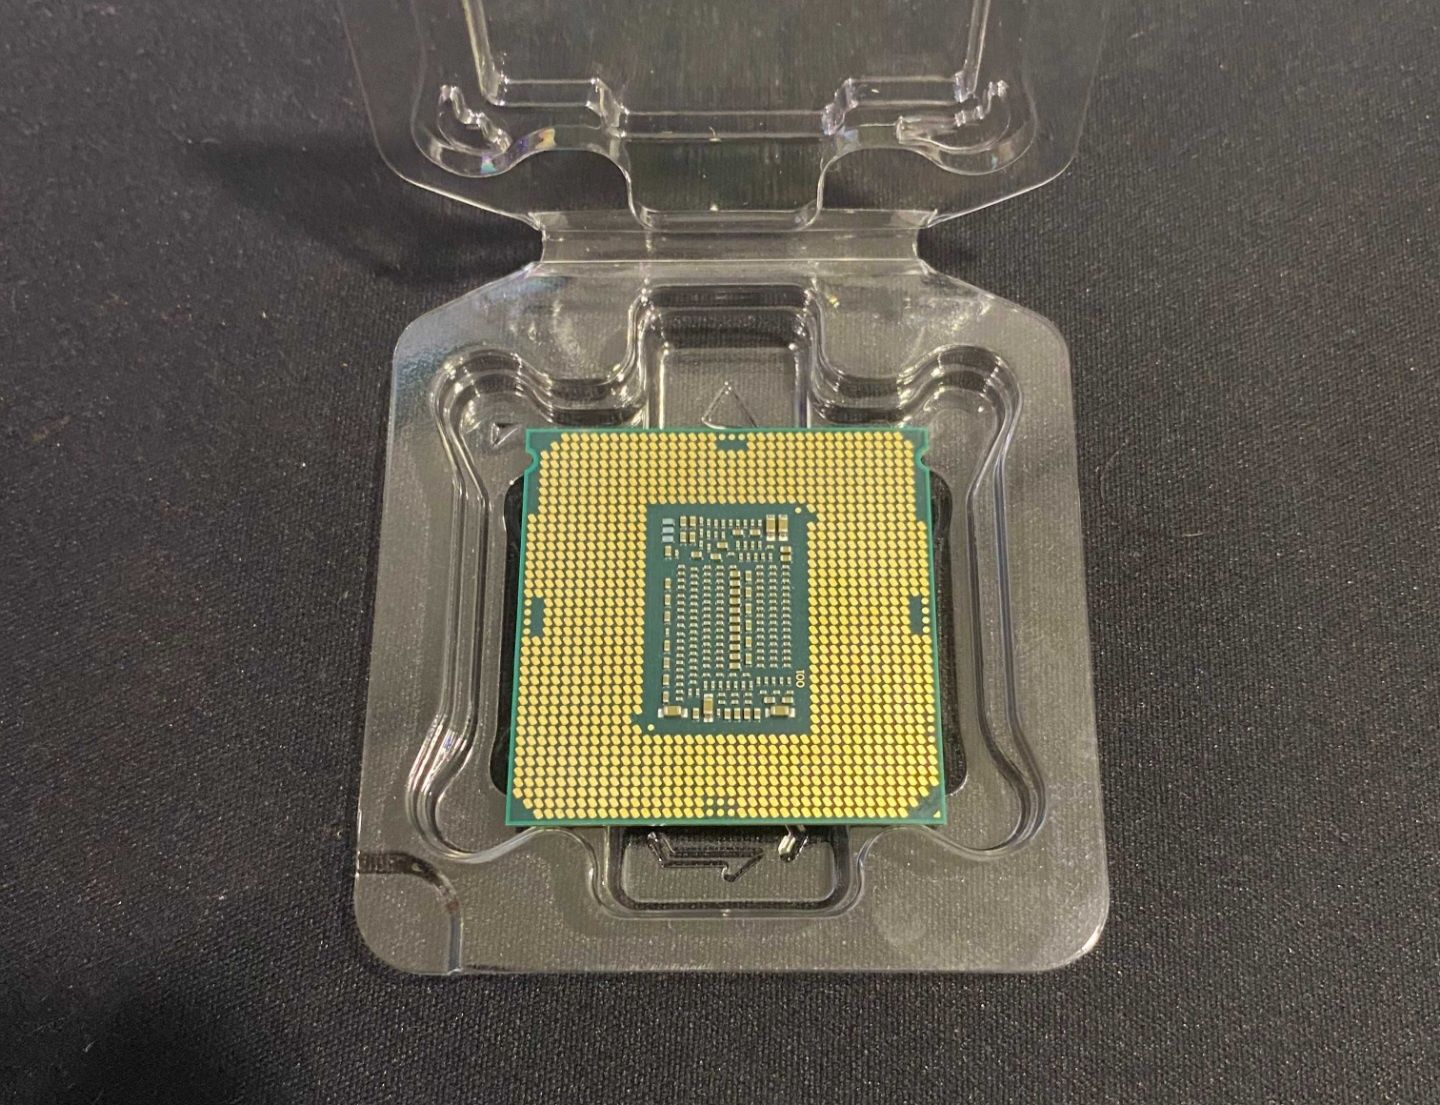 Processador Intel® Core™ i5-9400F
cache de 9 M, até 4,10 GHz